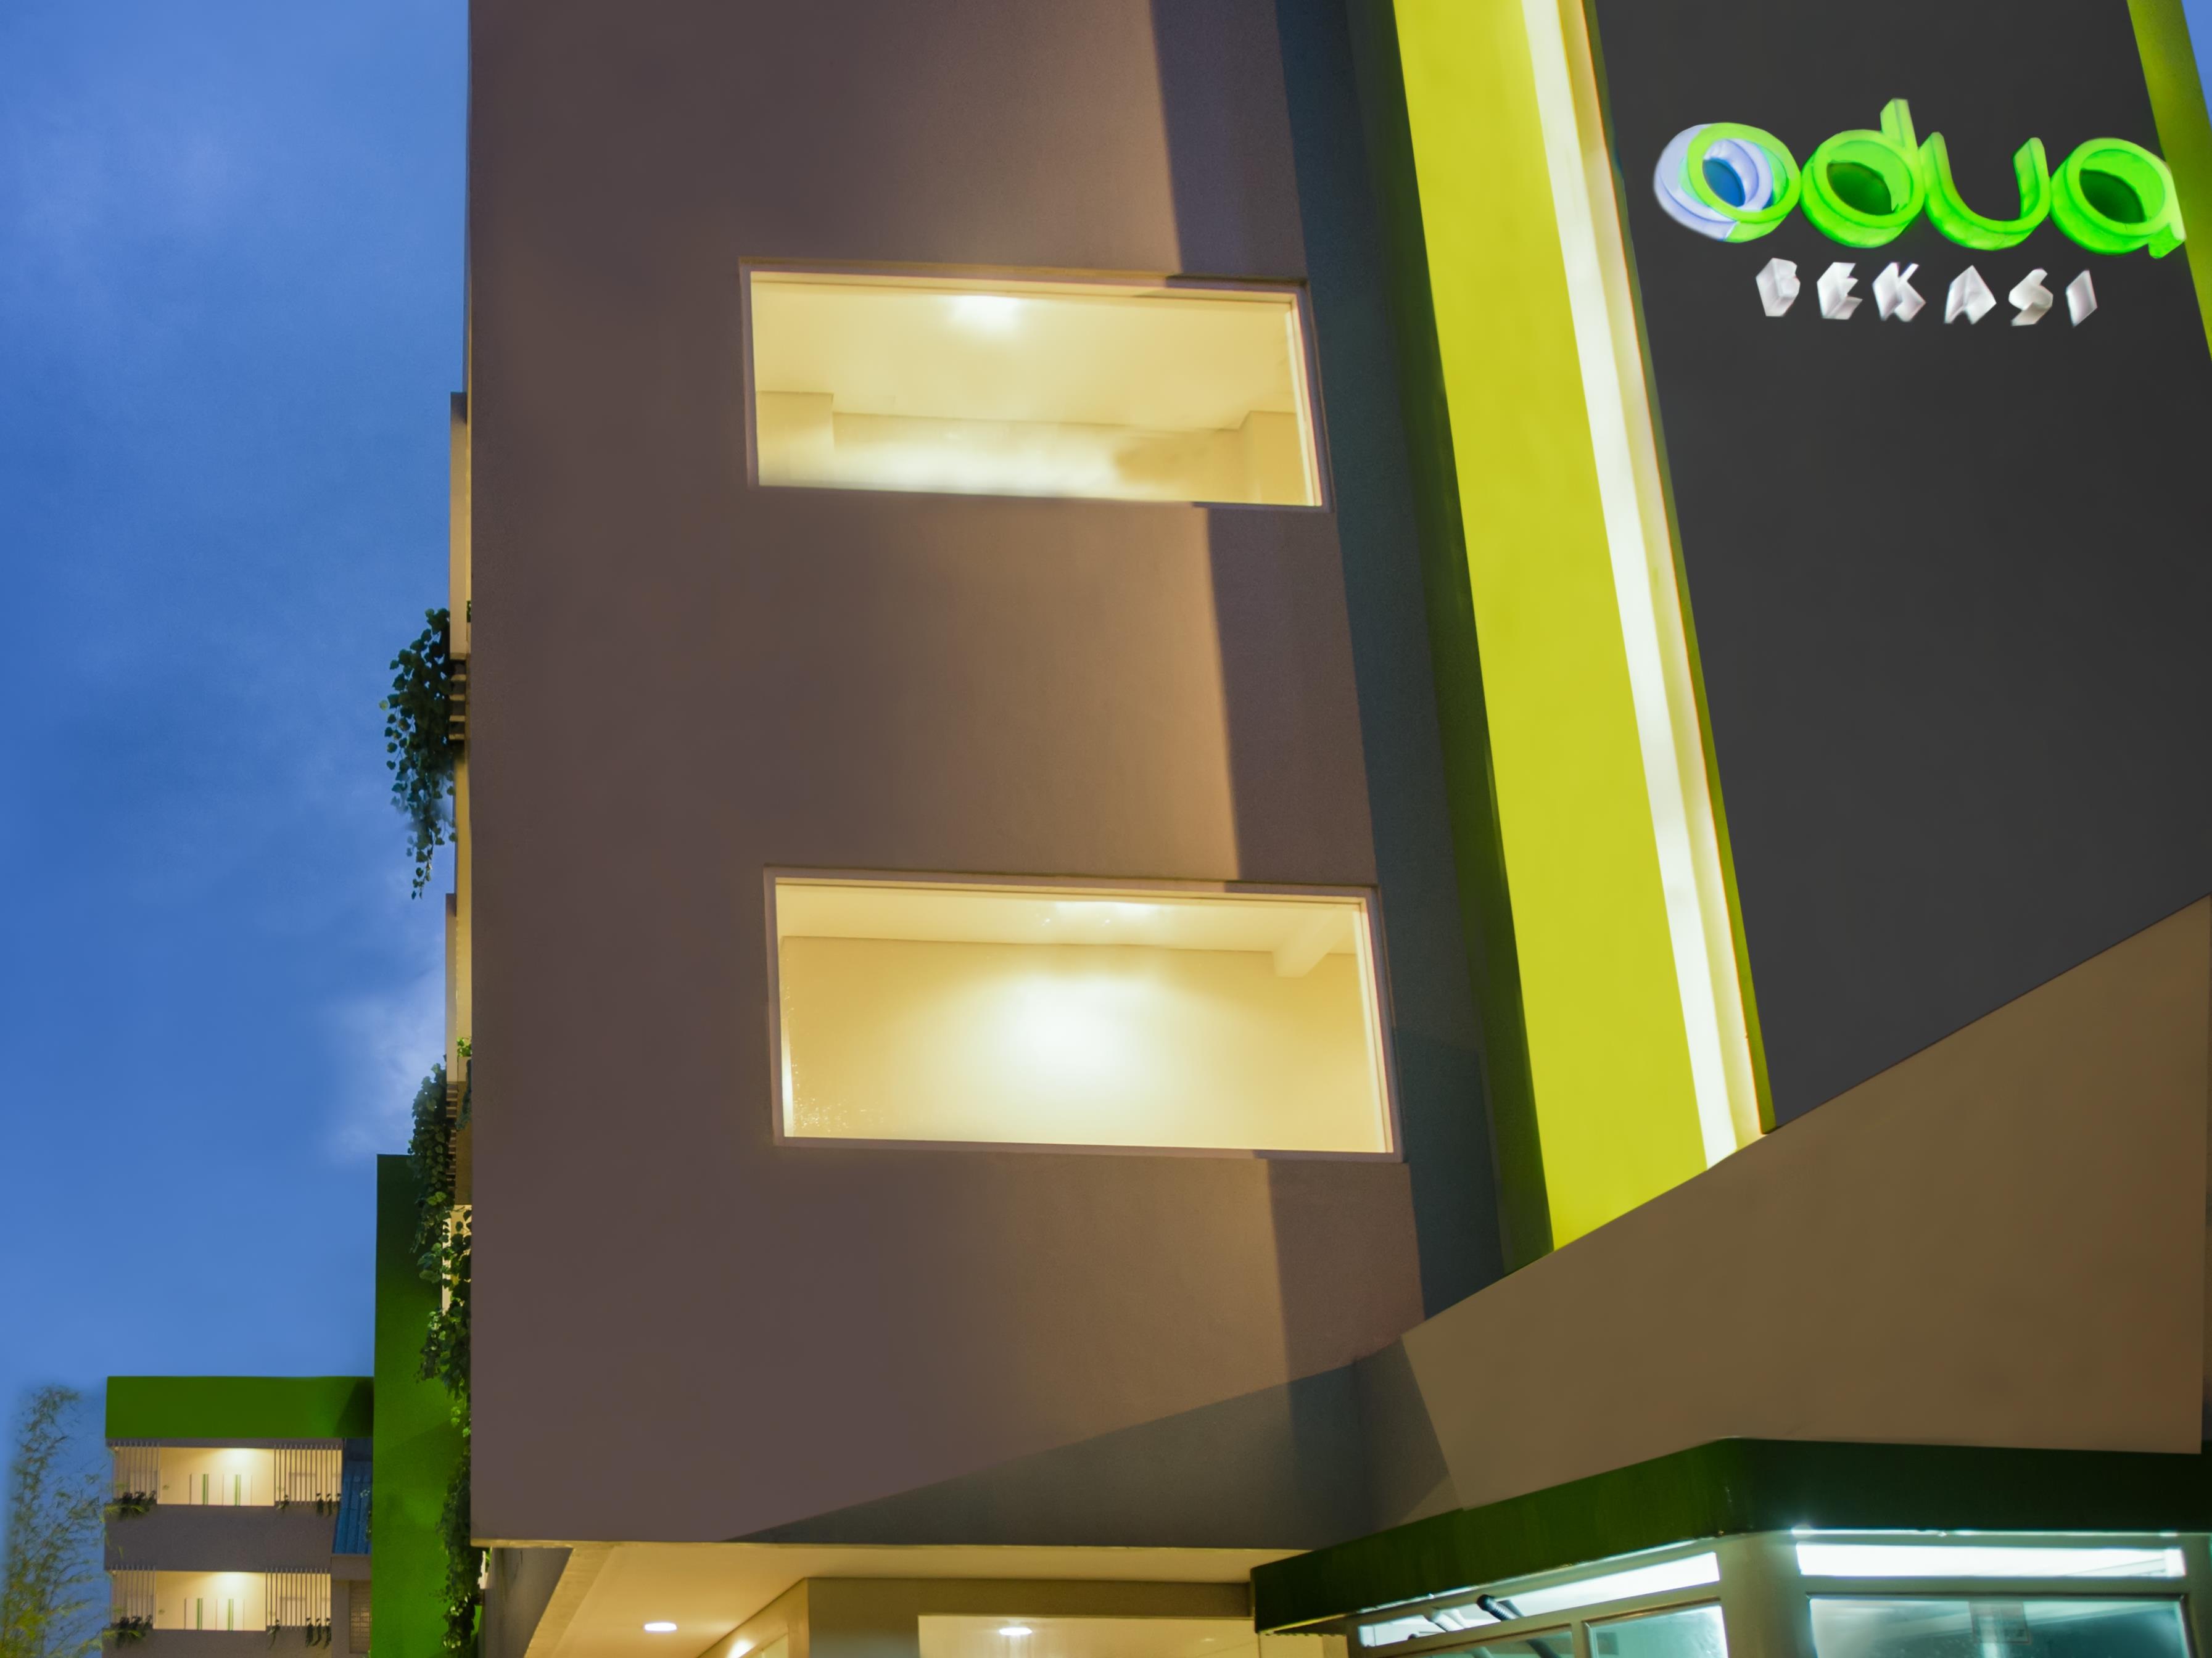 Odua Bekasi - Hotel O2 Bekasi , HD Wallpaper & Backgrounds